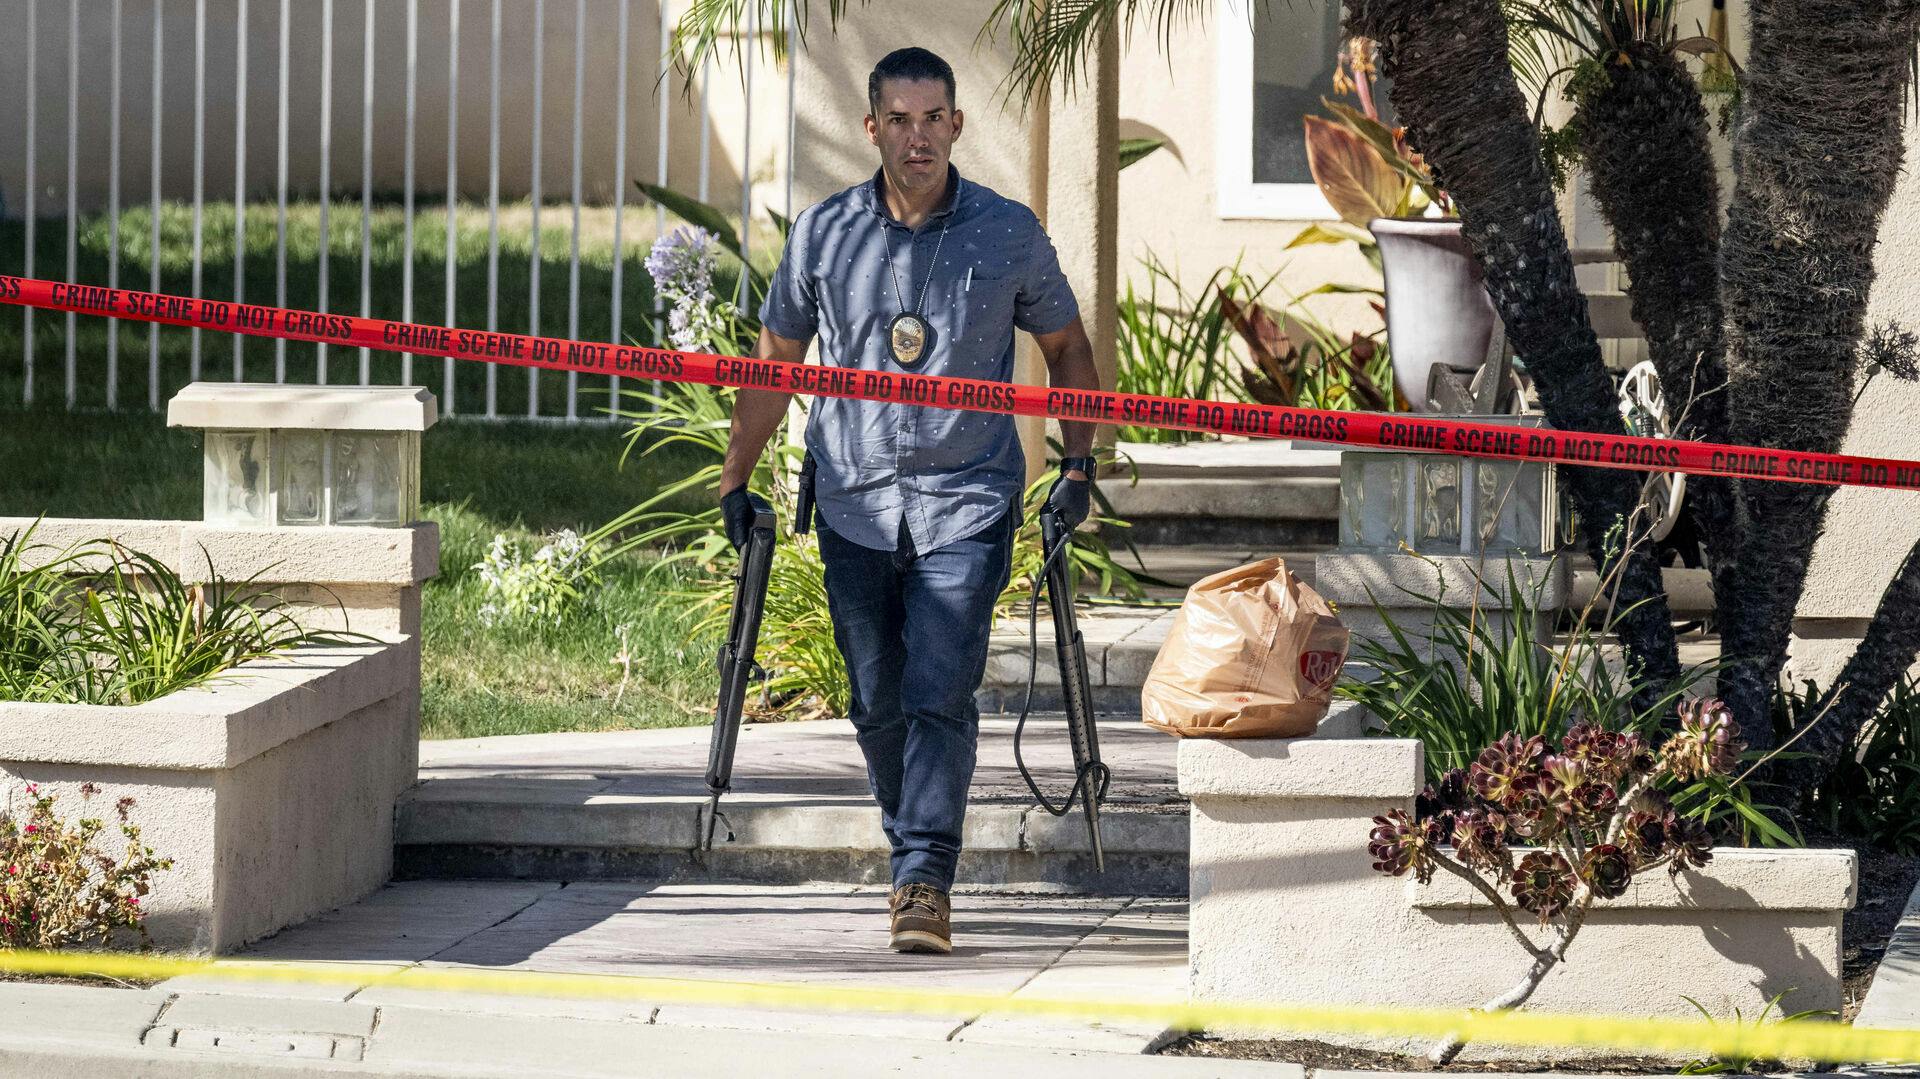 Efterforskere brugte flere timer på gerningsstedet, hvor de slæbte det ene våben efter det andet ud fra hjemmet i Anaheim, Californien.